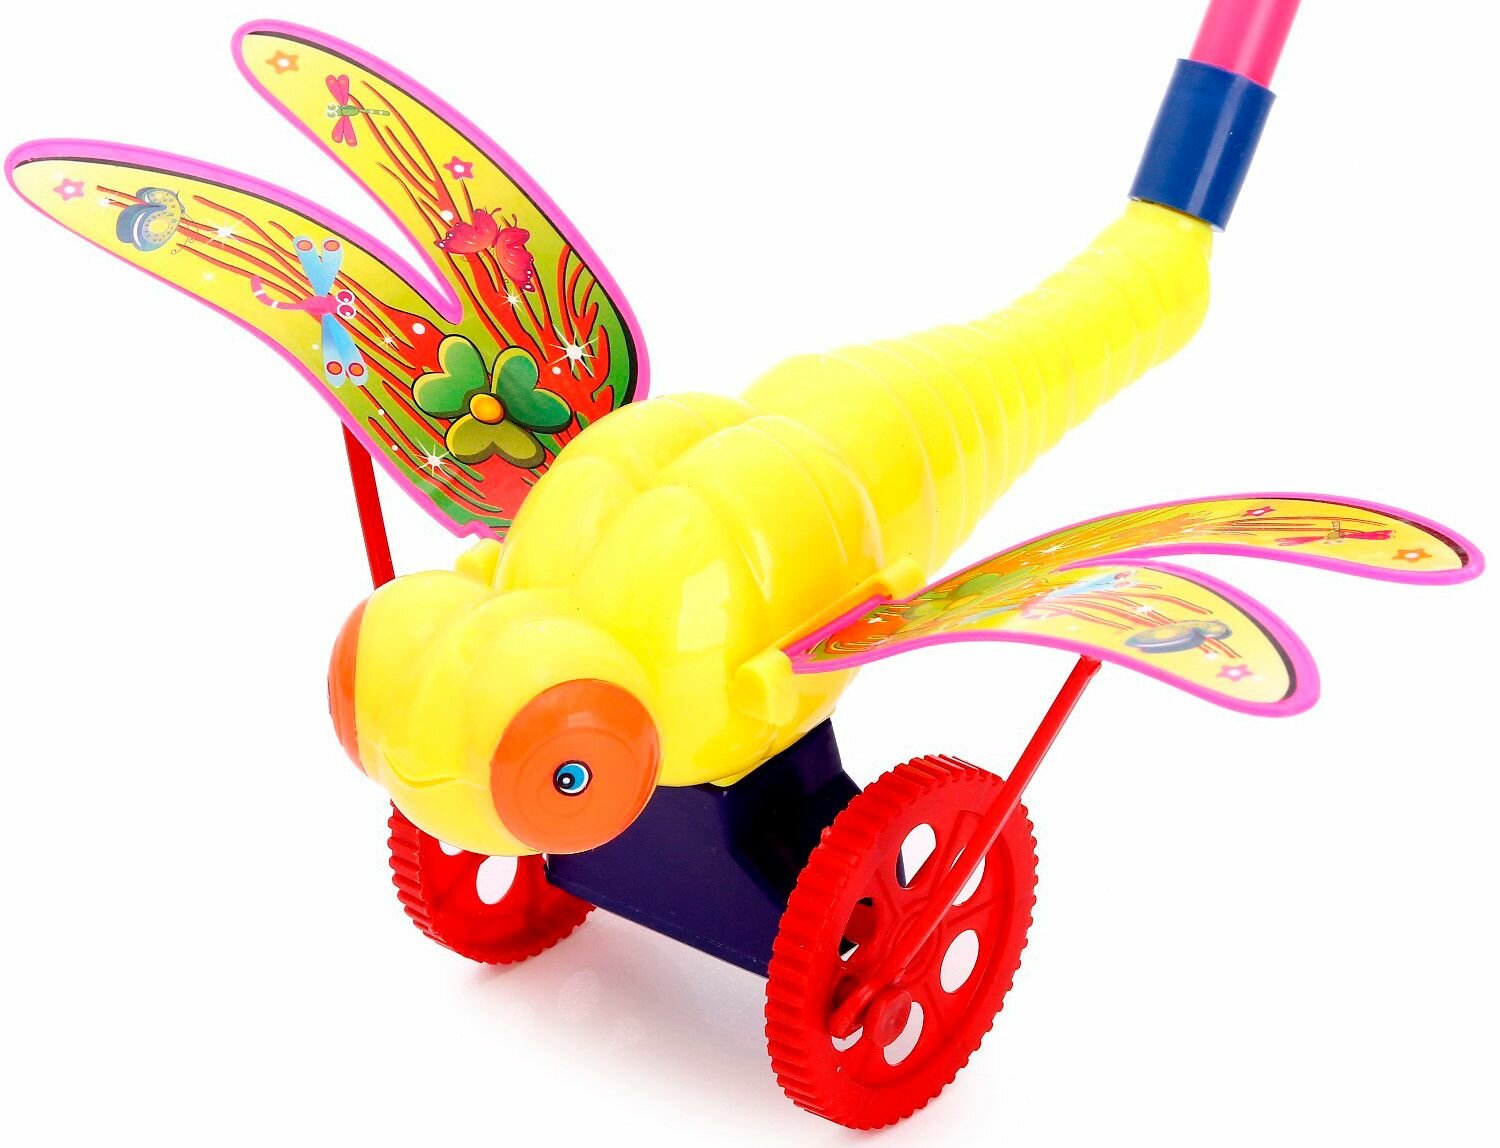 Детская каталка "Стрекоза", длина ручки 40 см, игрушка на палочке для дома и улицы, цвета микс